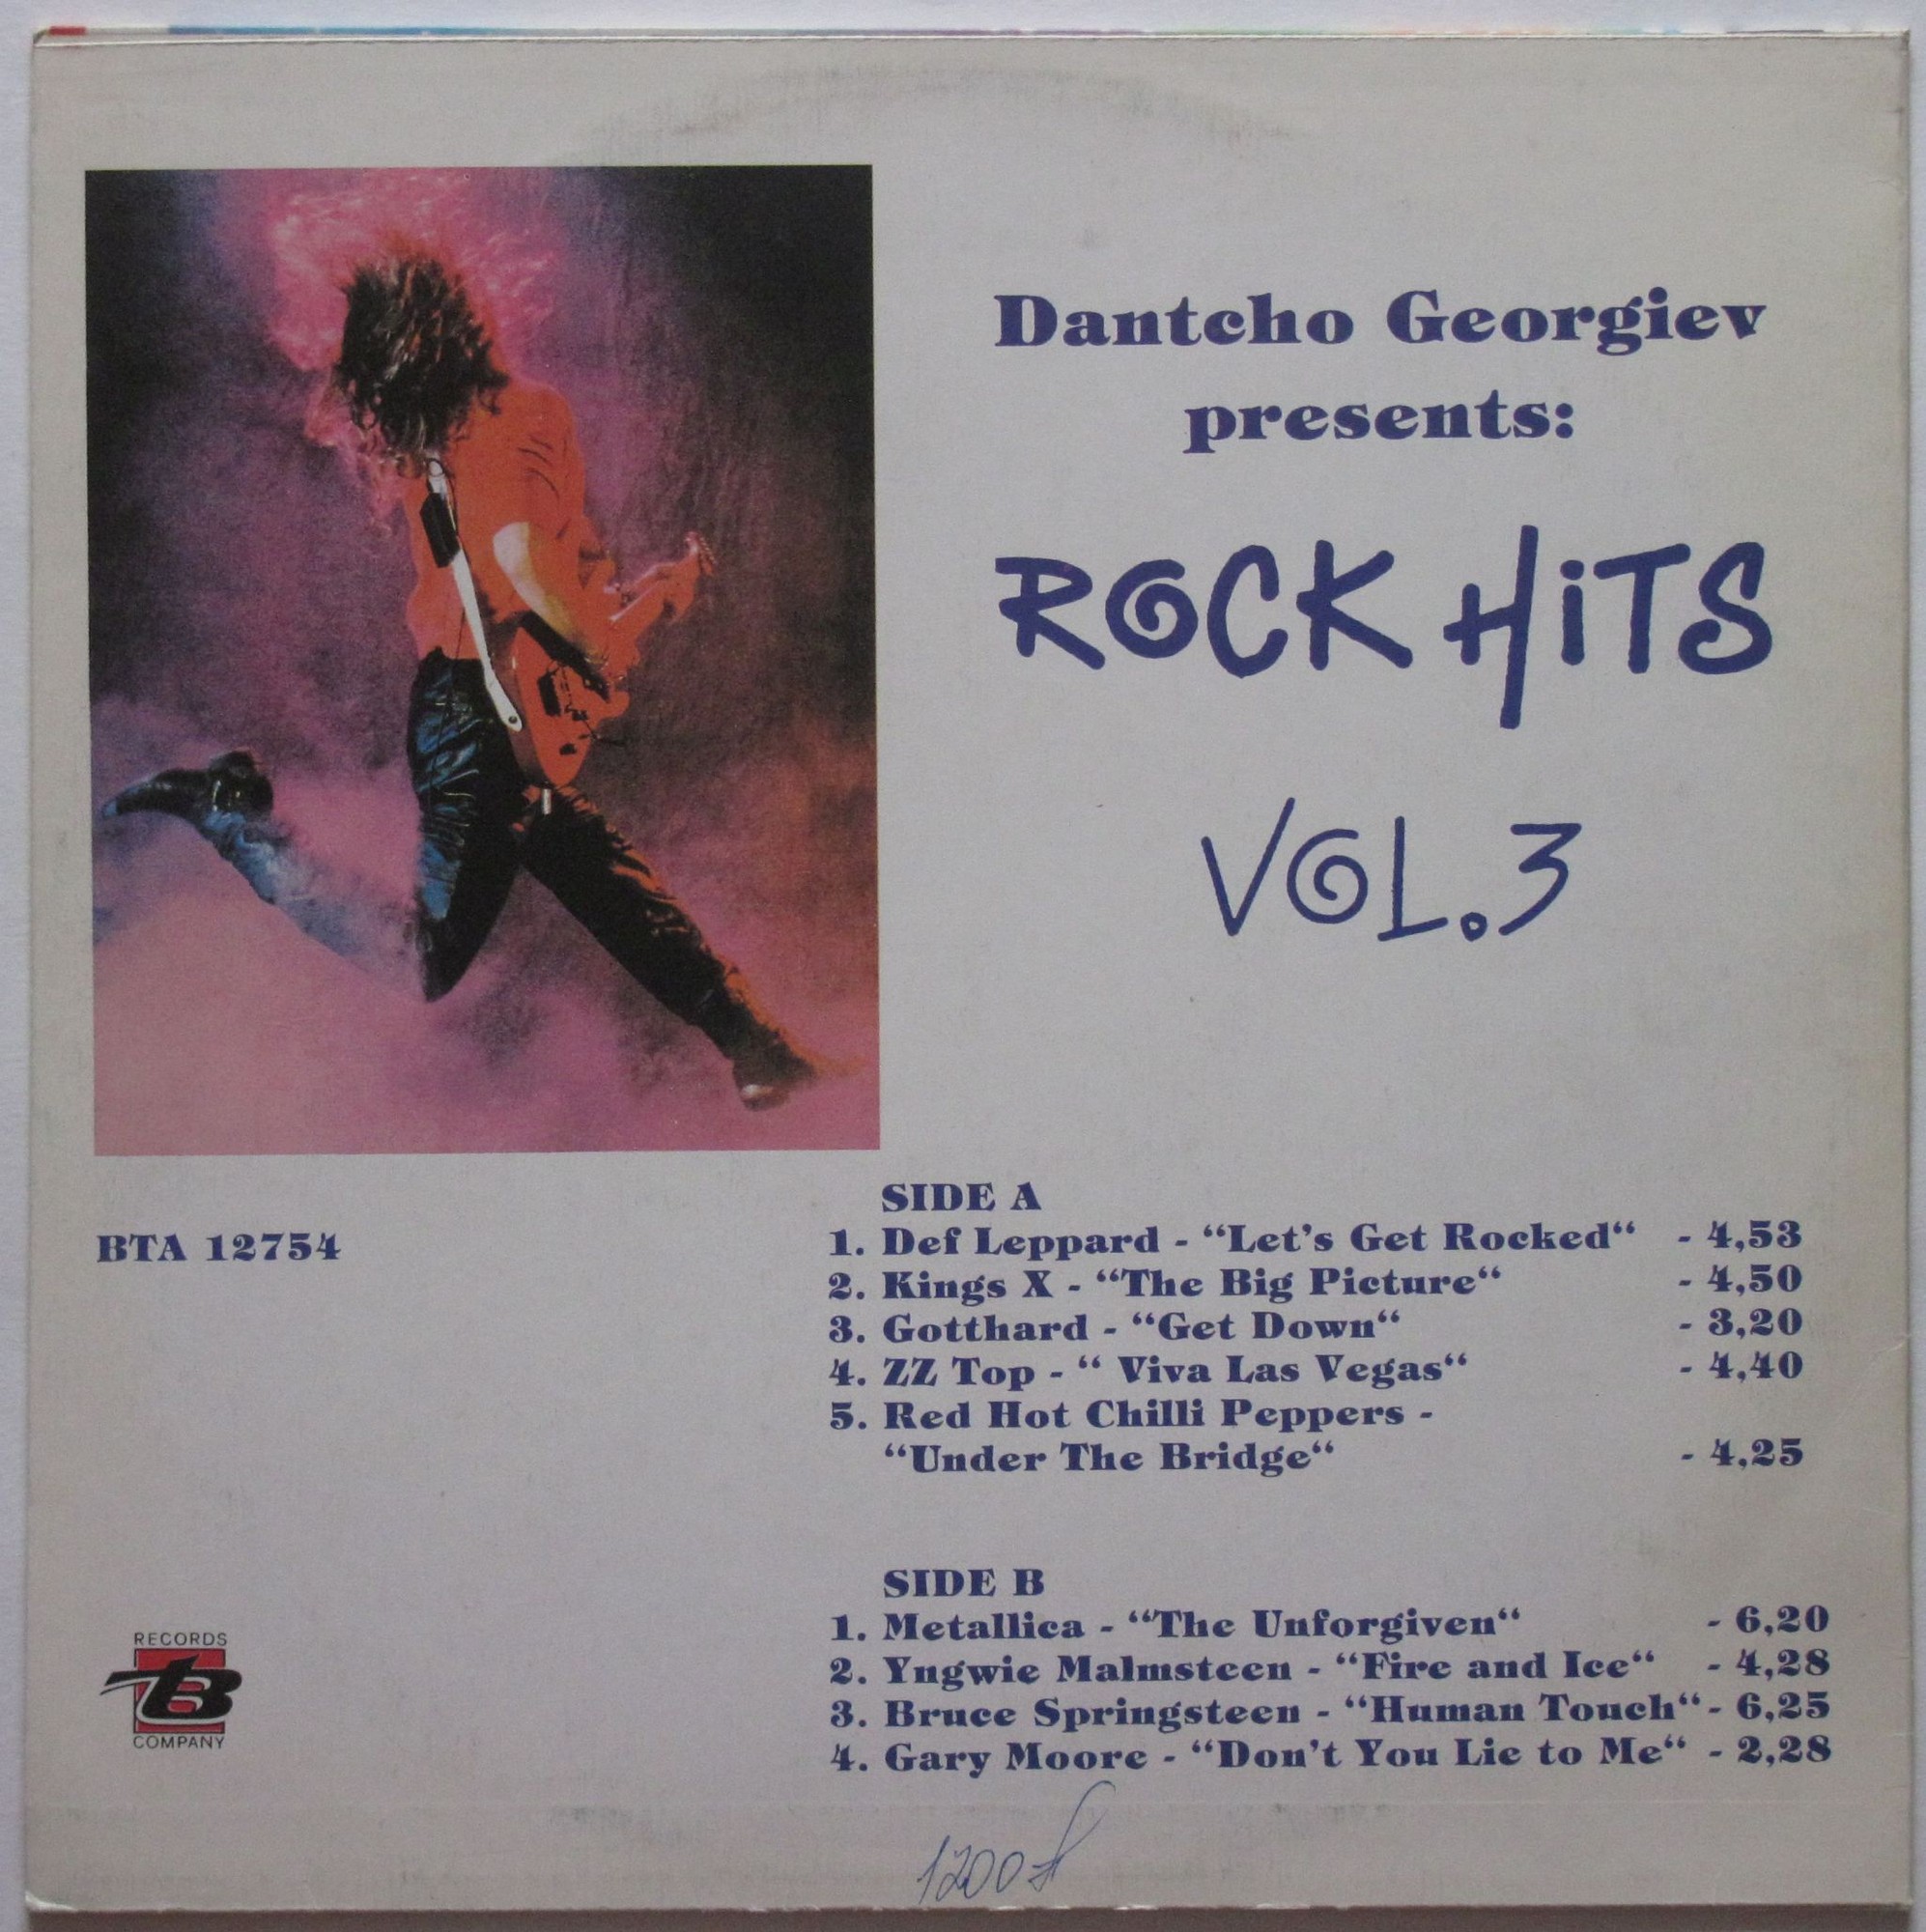 Dantcho Georgiev presents: Rock hits '91. Vol. 3